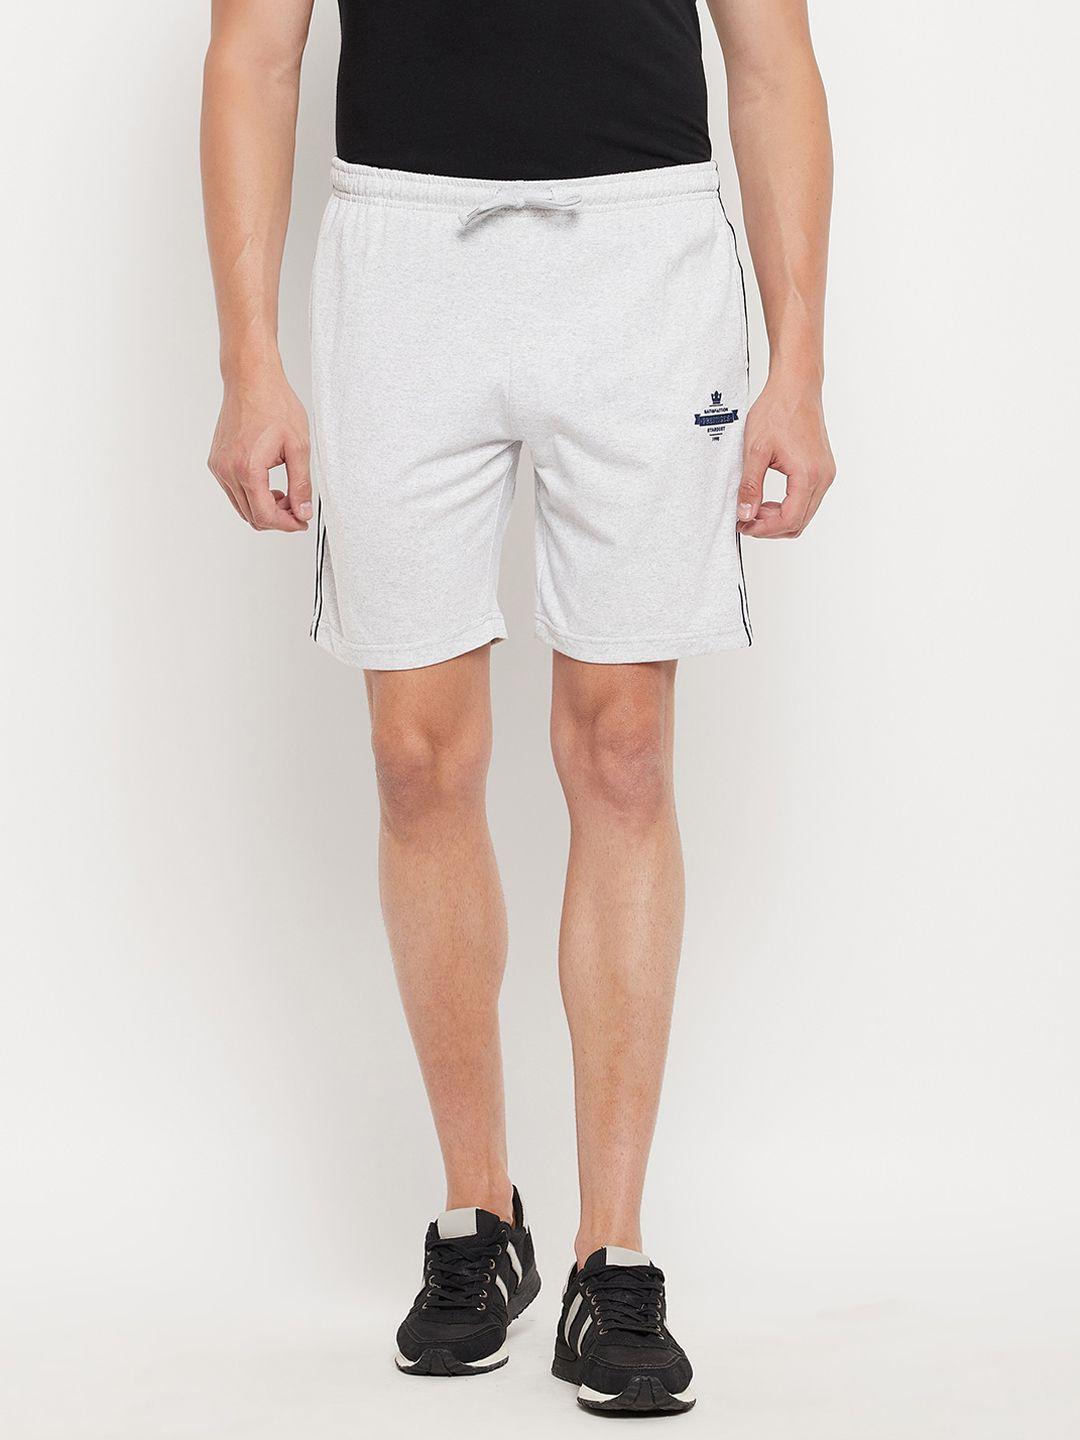 duke men white sports shorts